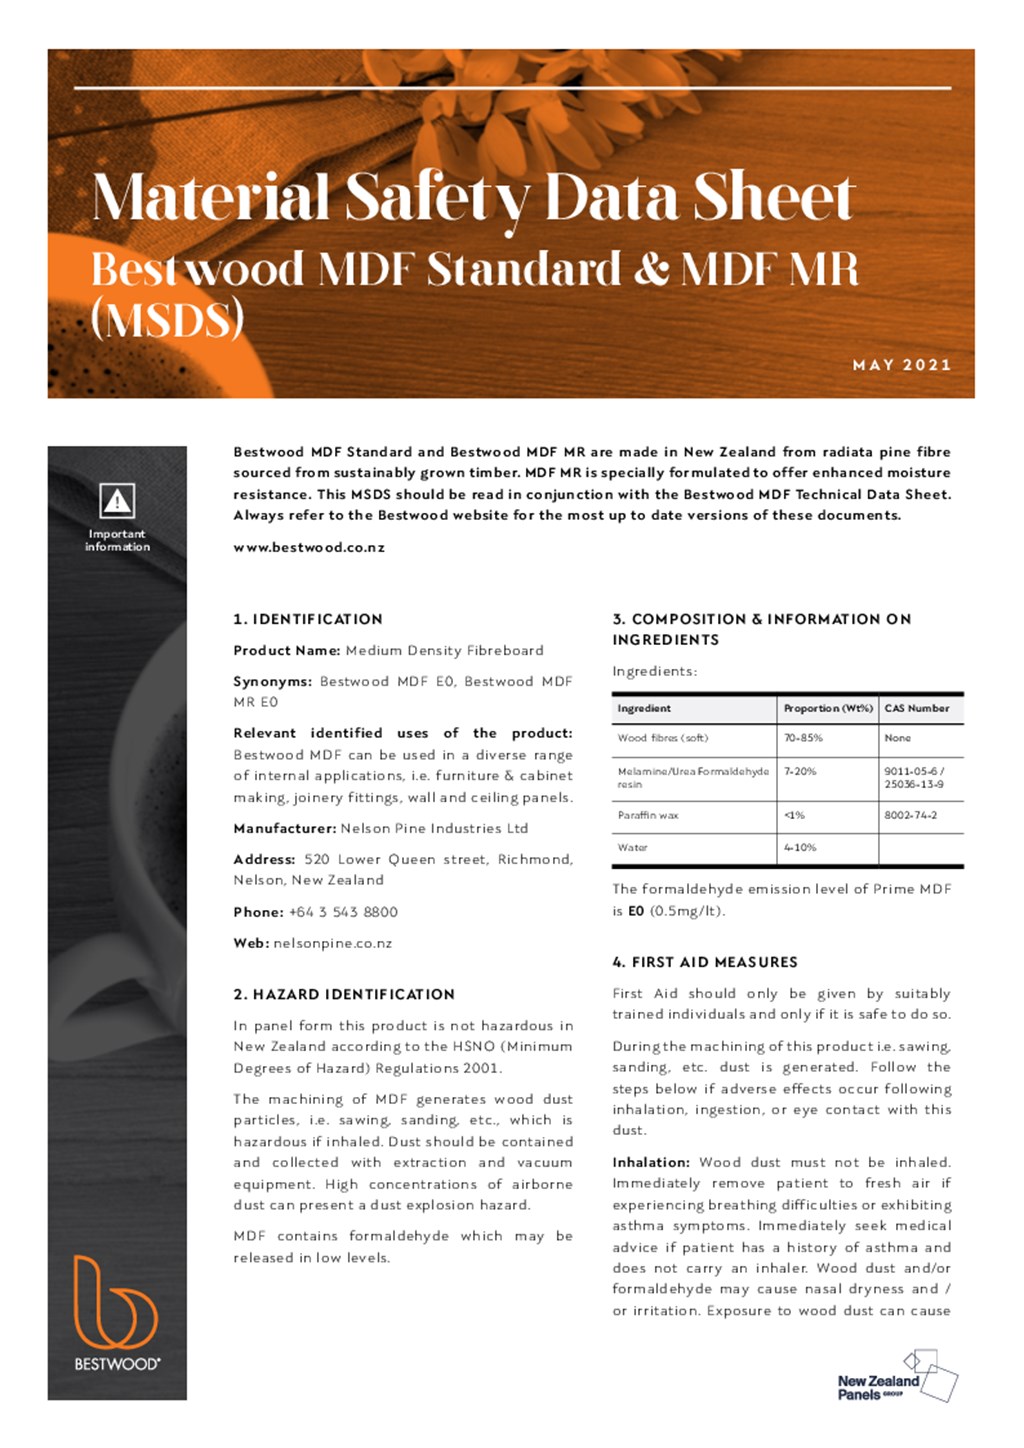 Bestwood MDF Standard and MDF MR SDS